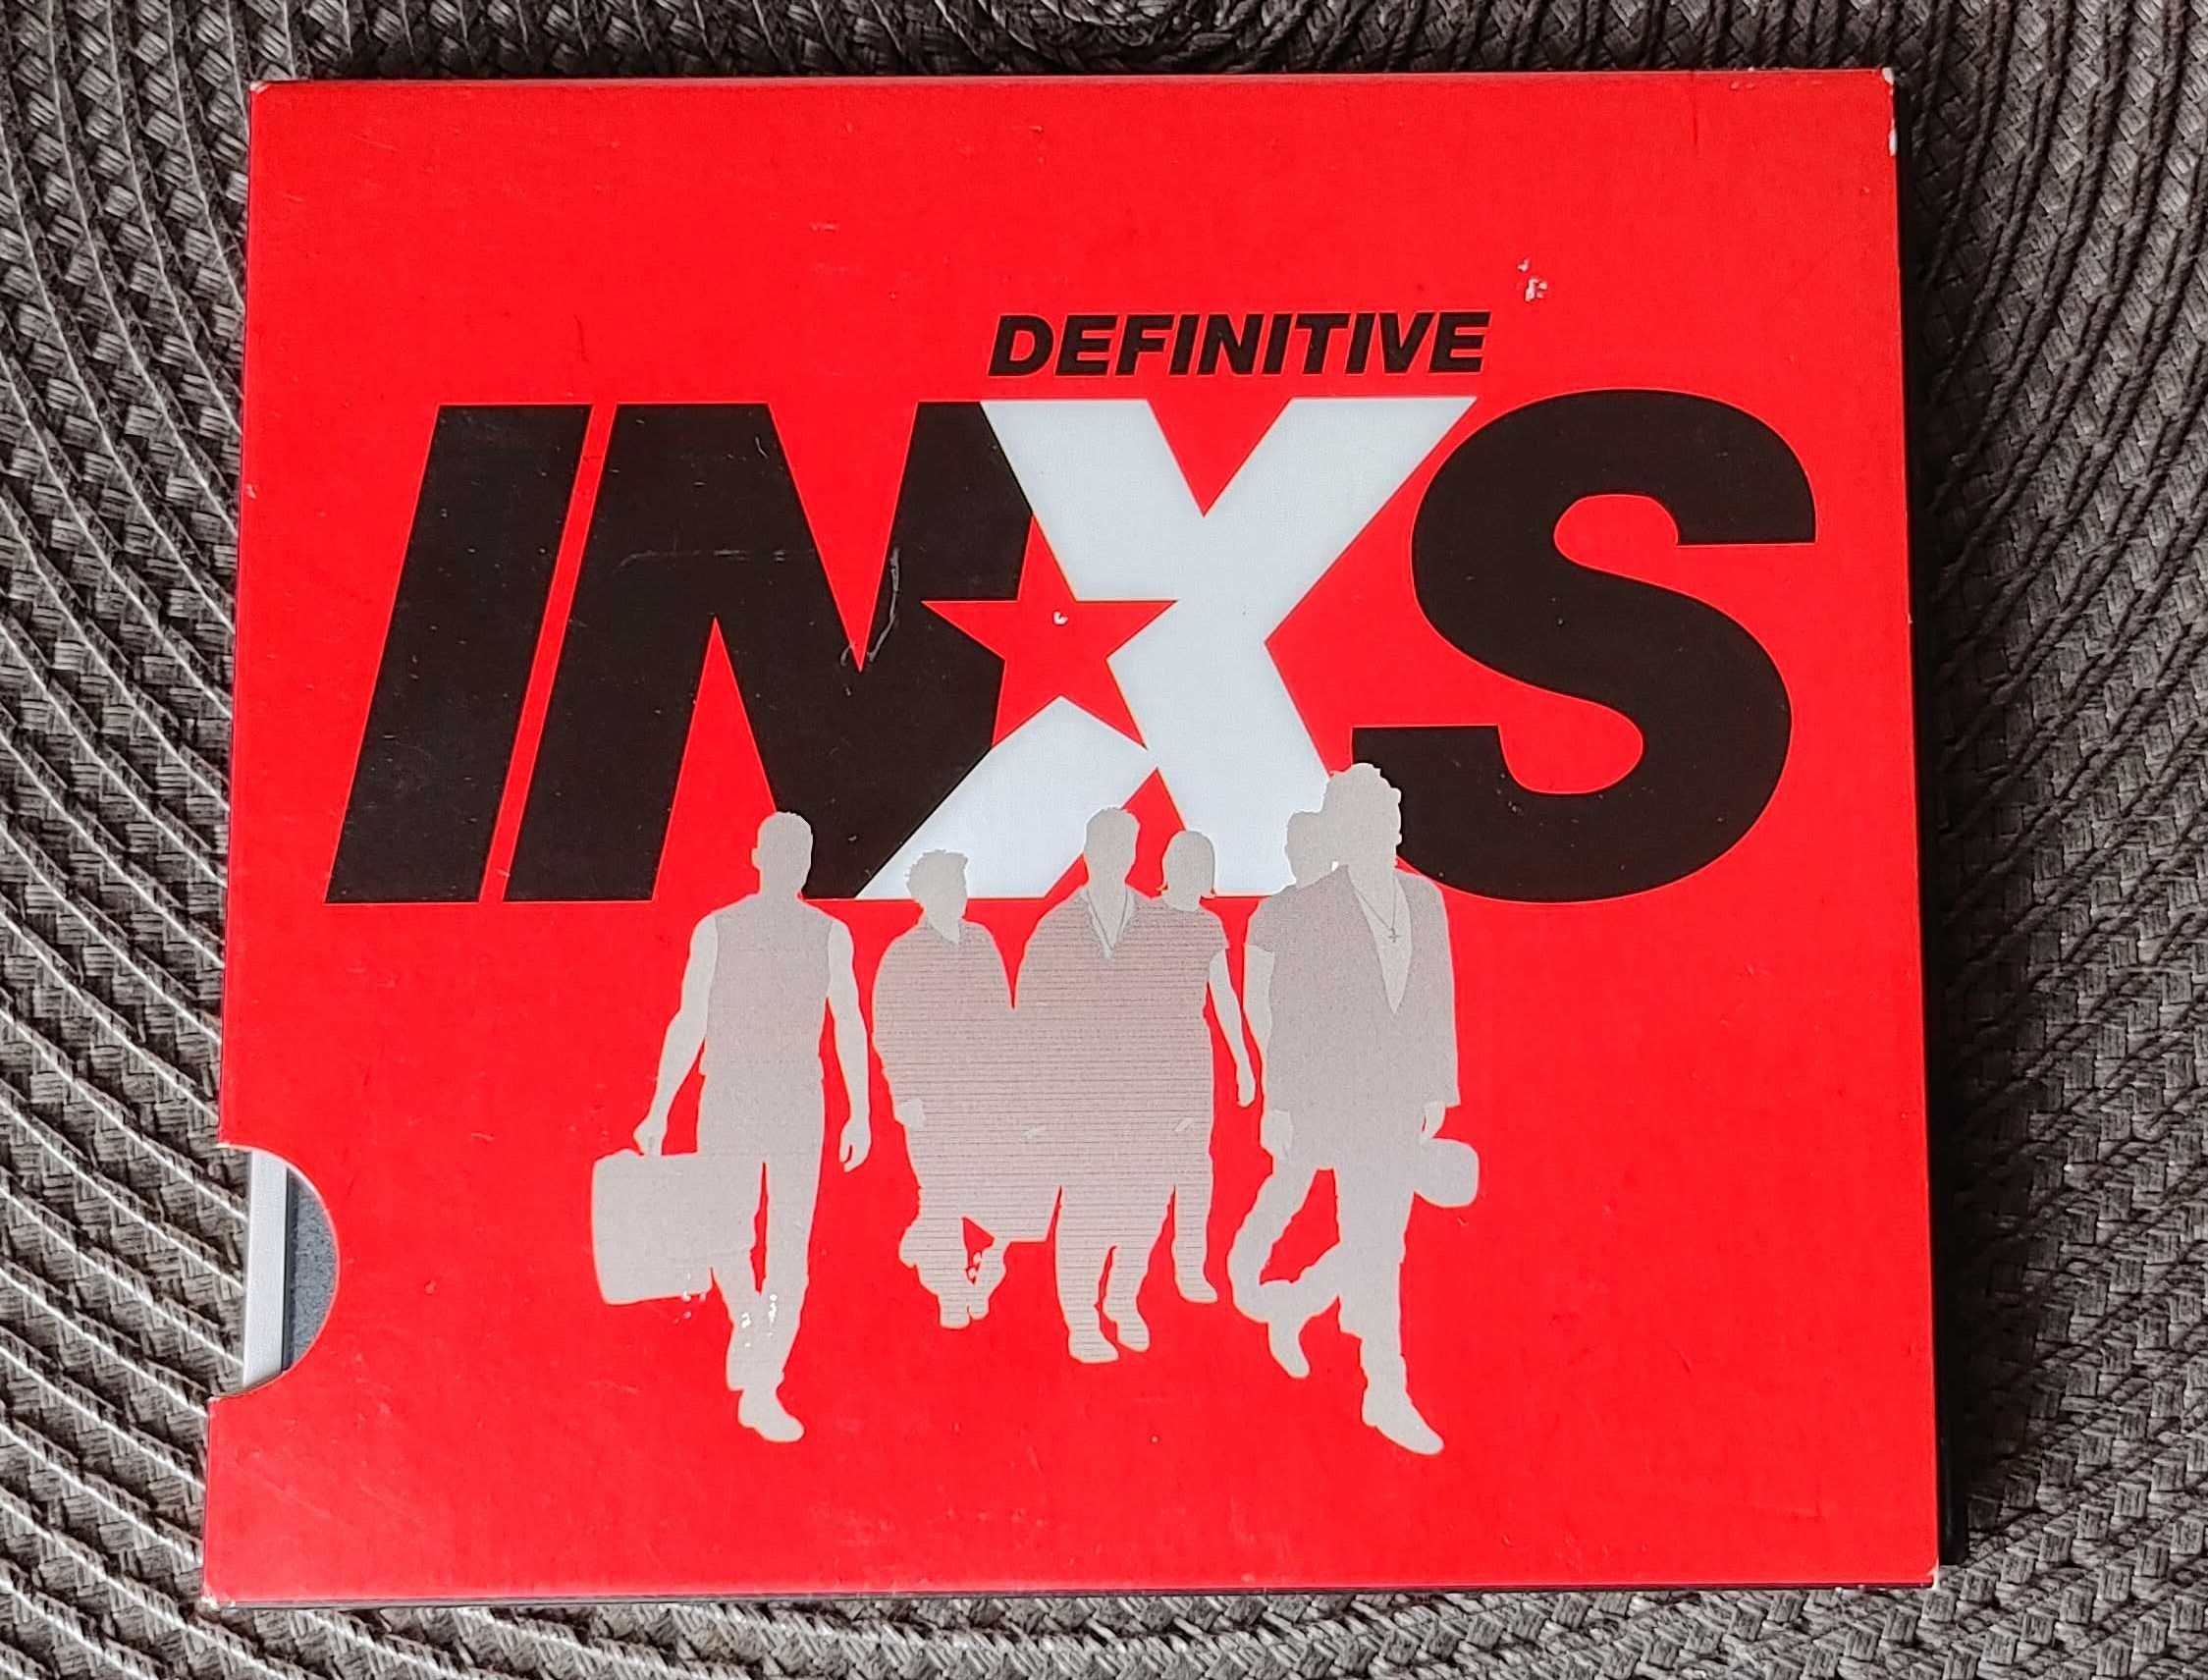 INXS - album Definitive - 21 największych przebojów na płycie cd